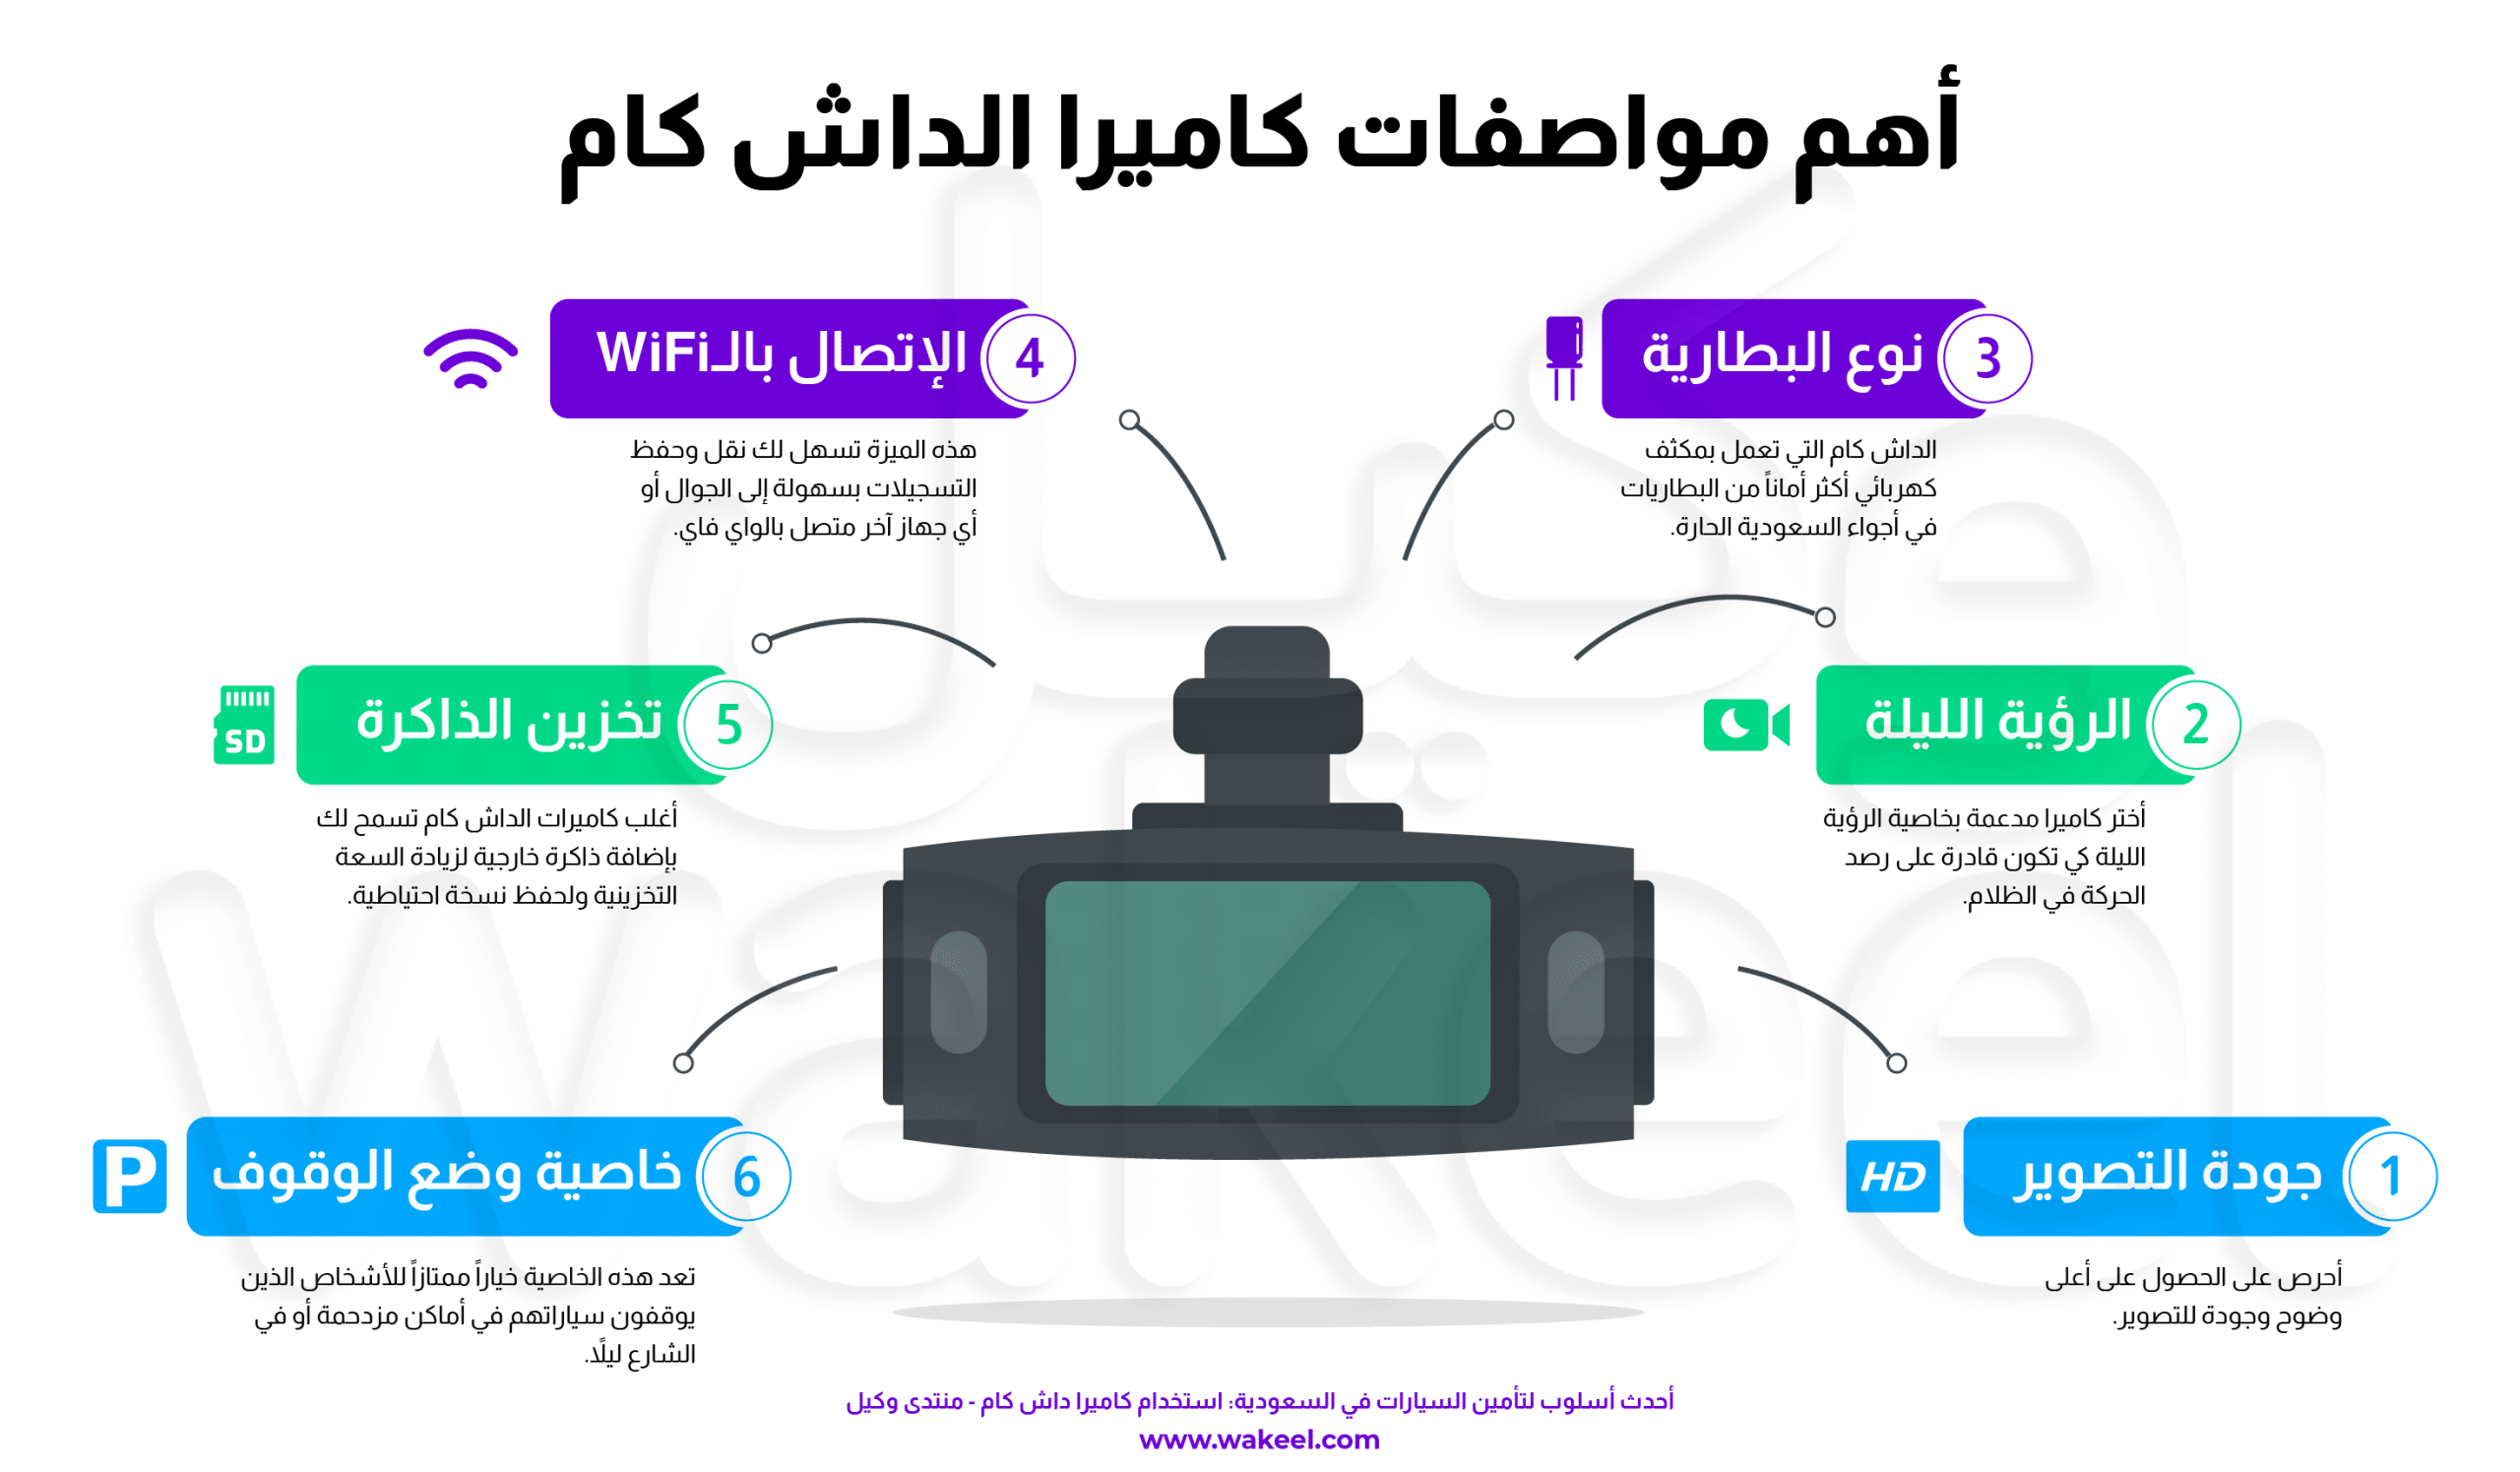 "إنفوجرافيك يظهر 6 ميزات أساسية لا غنى عنها لكاميرات السيارات في السعودية: جودة الفيديو، الرؤية الليلية، البطارية، الاتصال، التخزين، ووضع الإيقاف. يتم وصف كل ميزة بإيجاز مع رمز